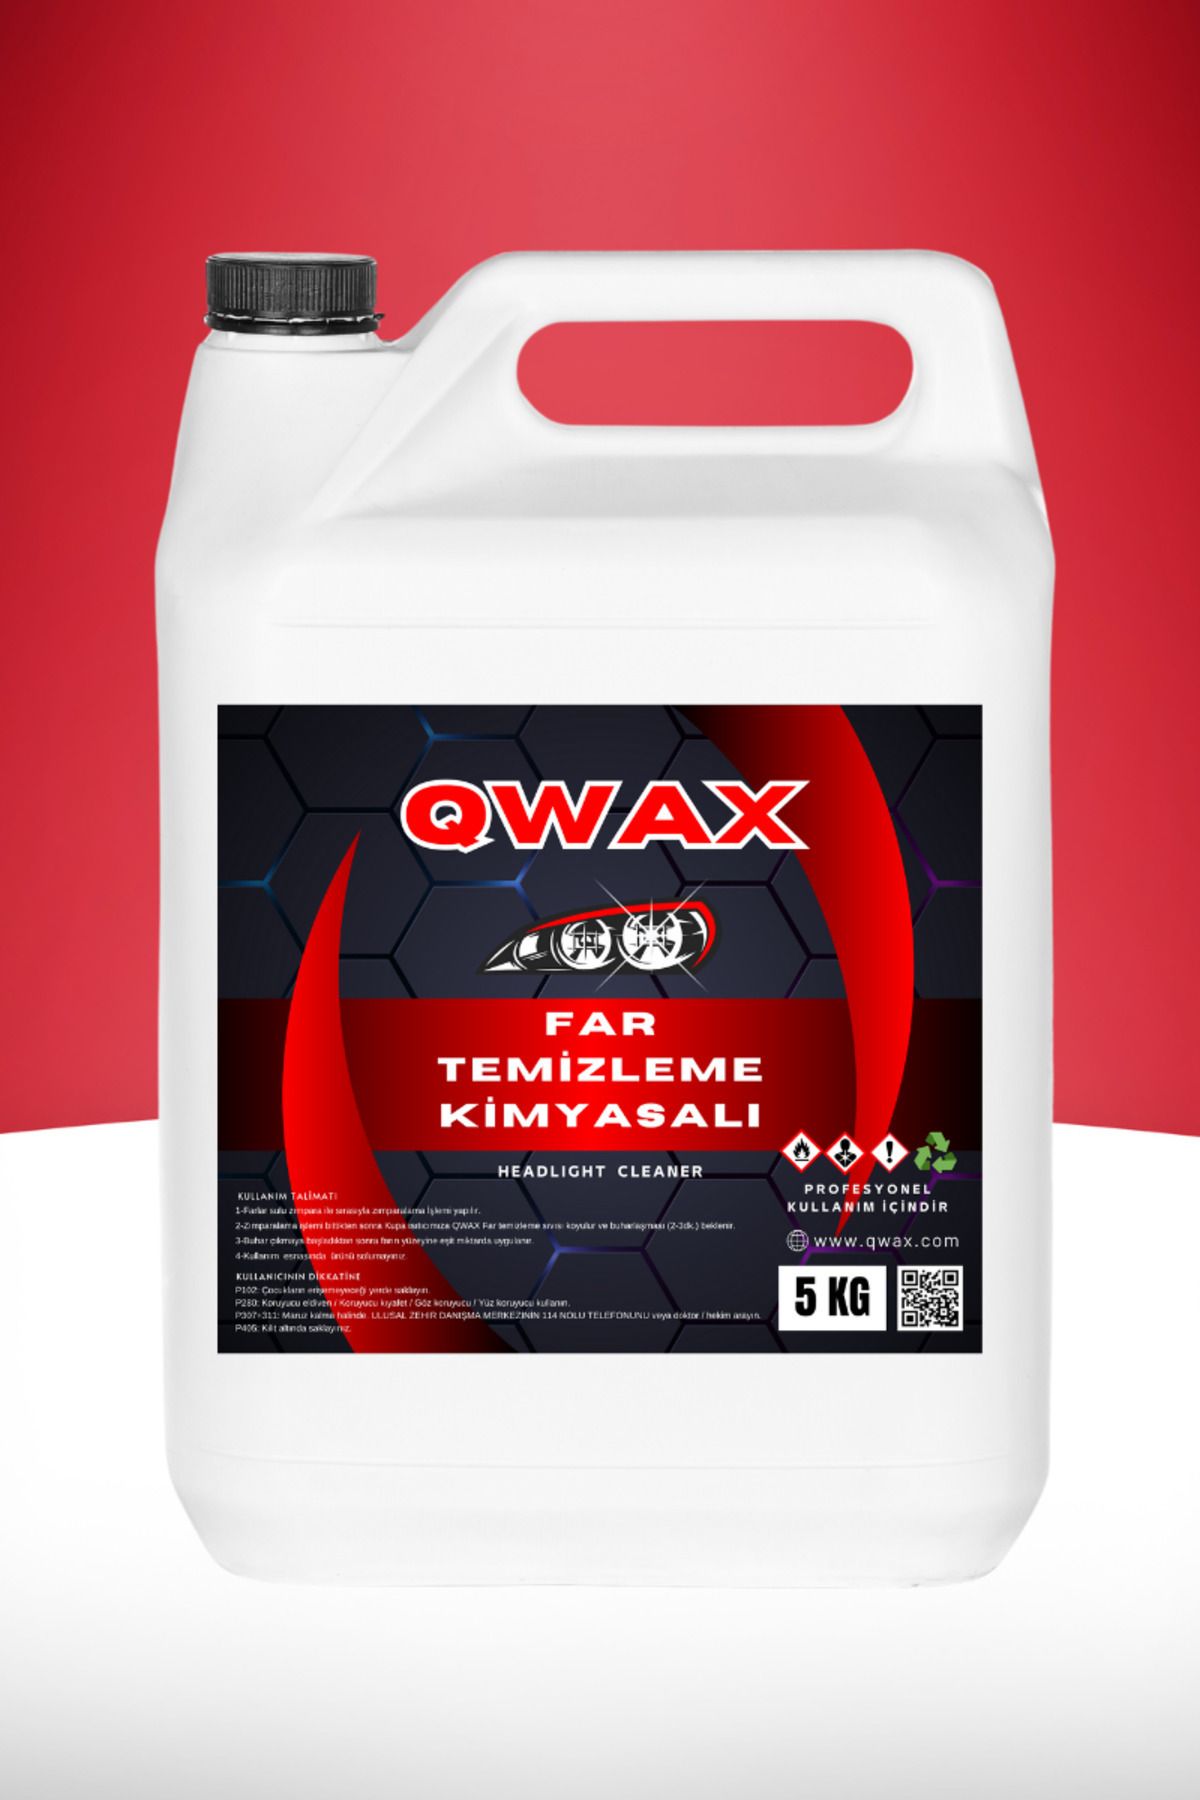 QWAX Buharlı Oto Araç Far Parlatma Ve Temizleme Kloroform Sıvısı Kimyasal Solüsyonu 5 Kg